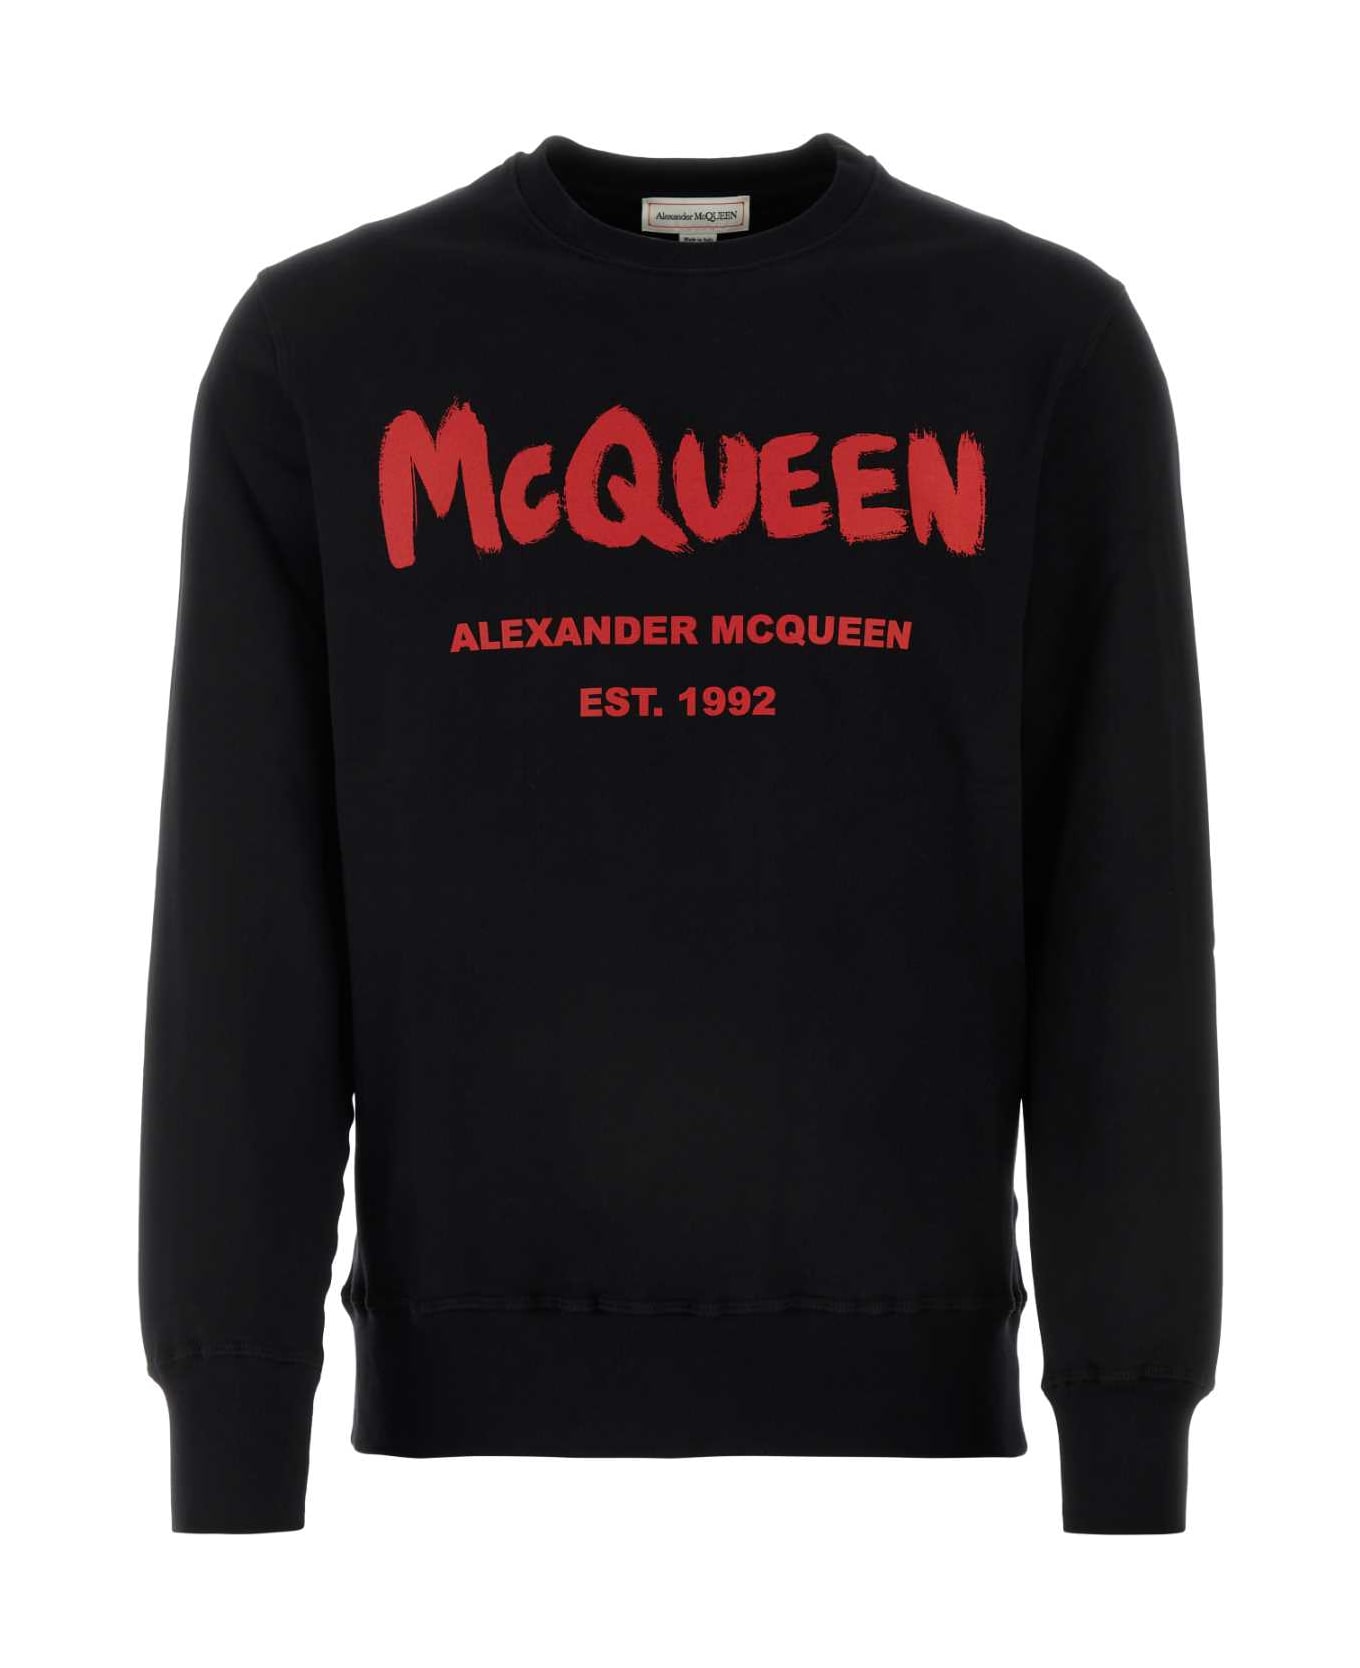 Alexander McQueen Black Cotton Sweatshirt - BLACKLUSTRED フリース